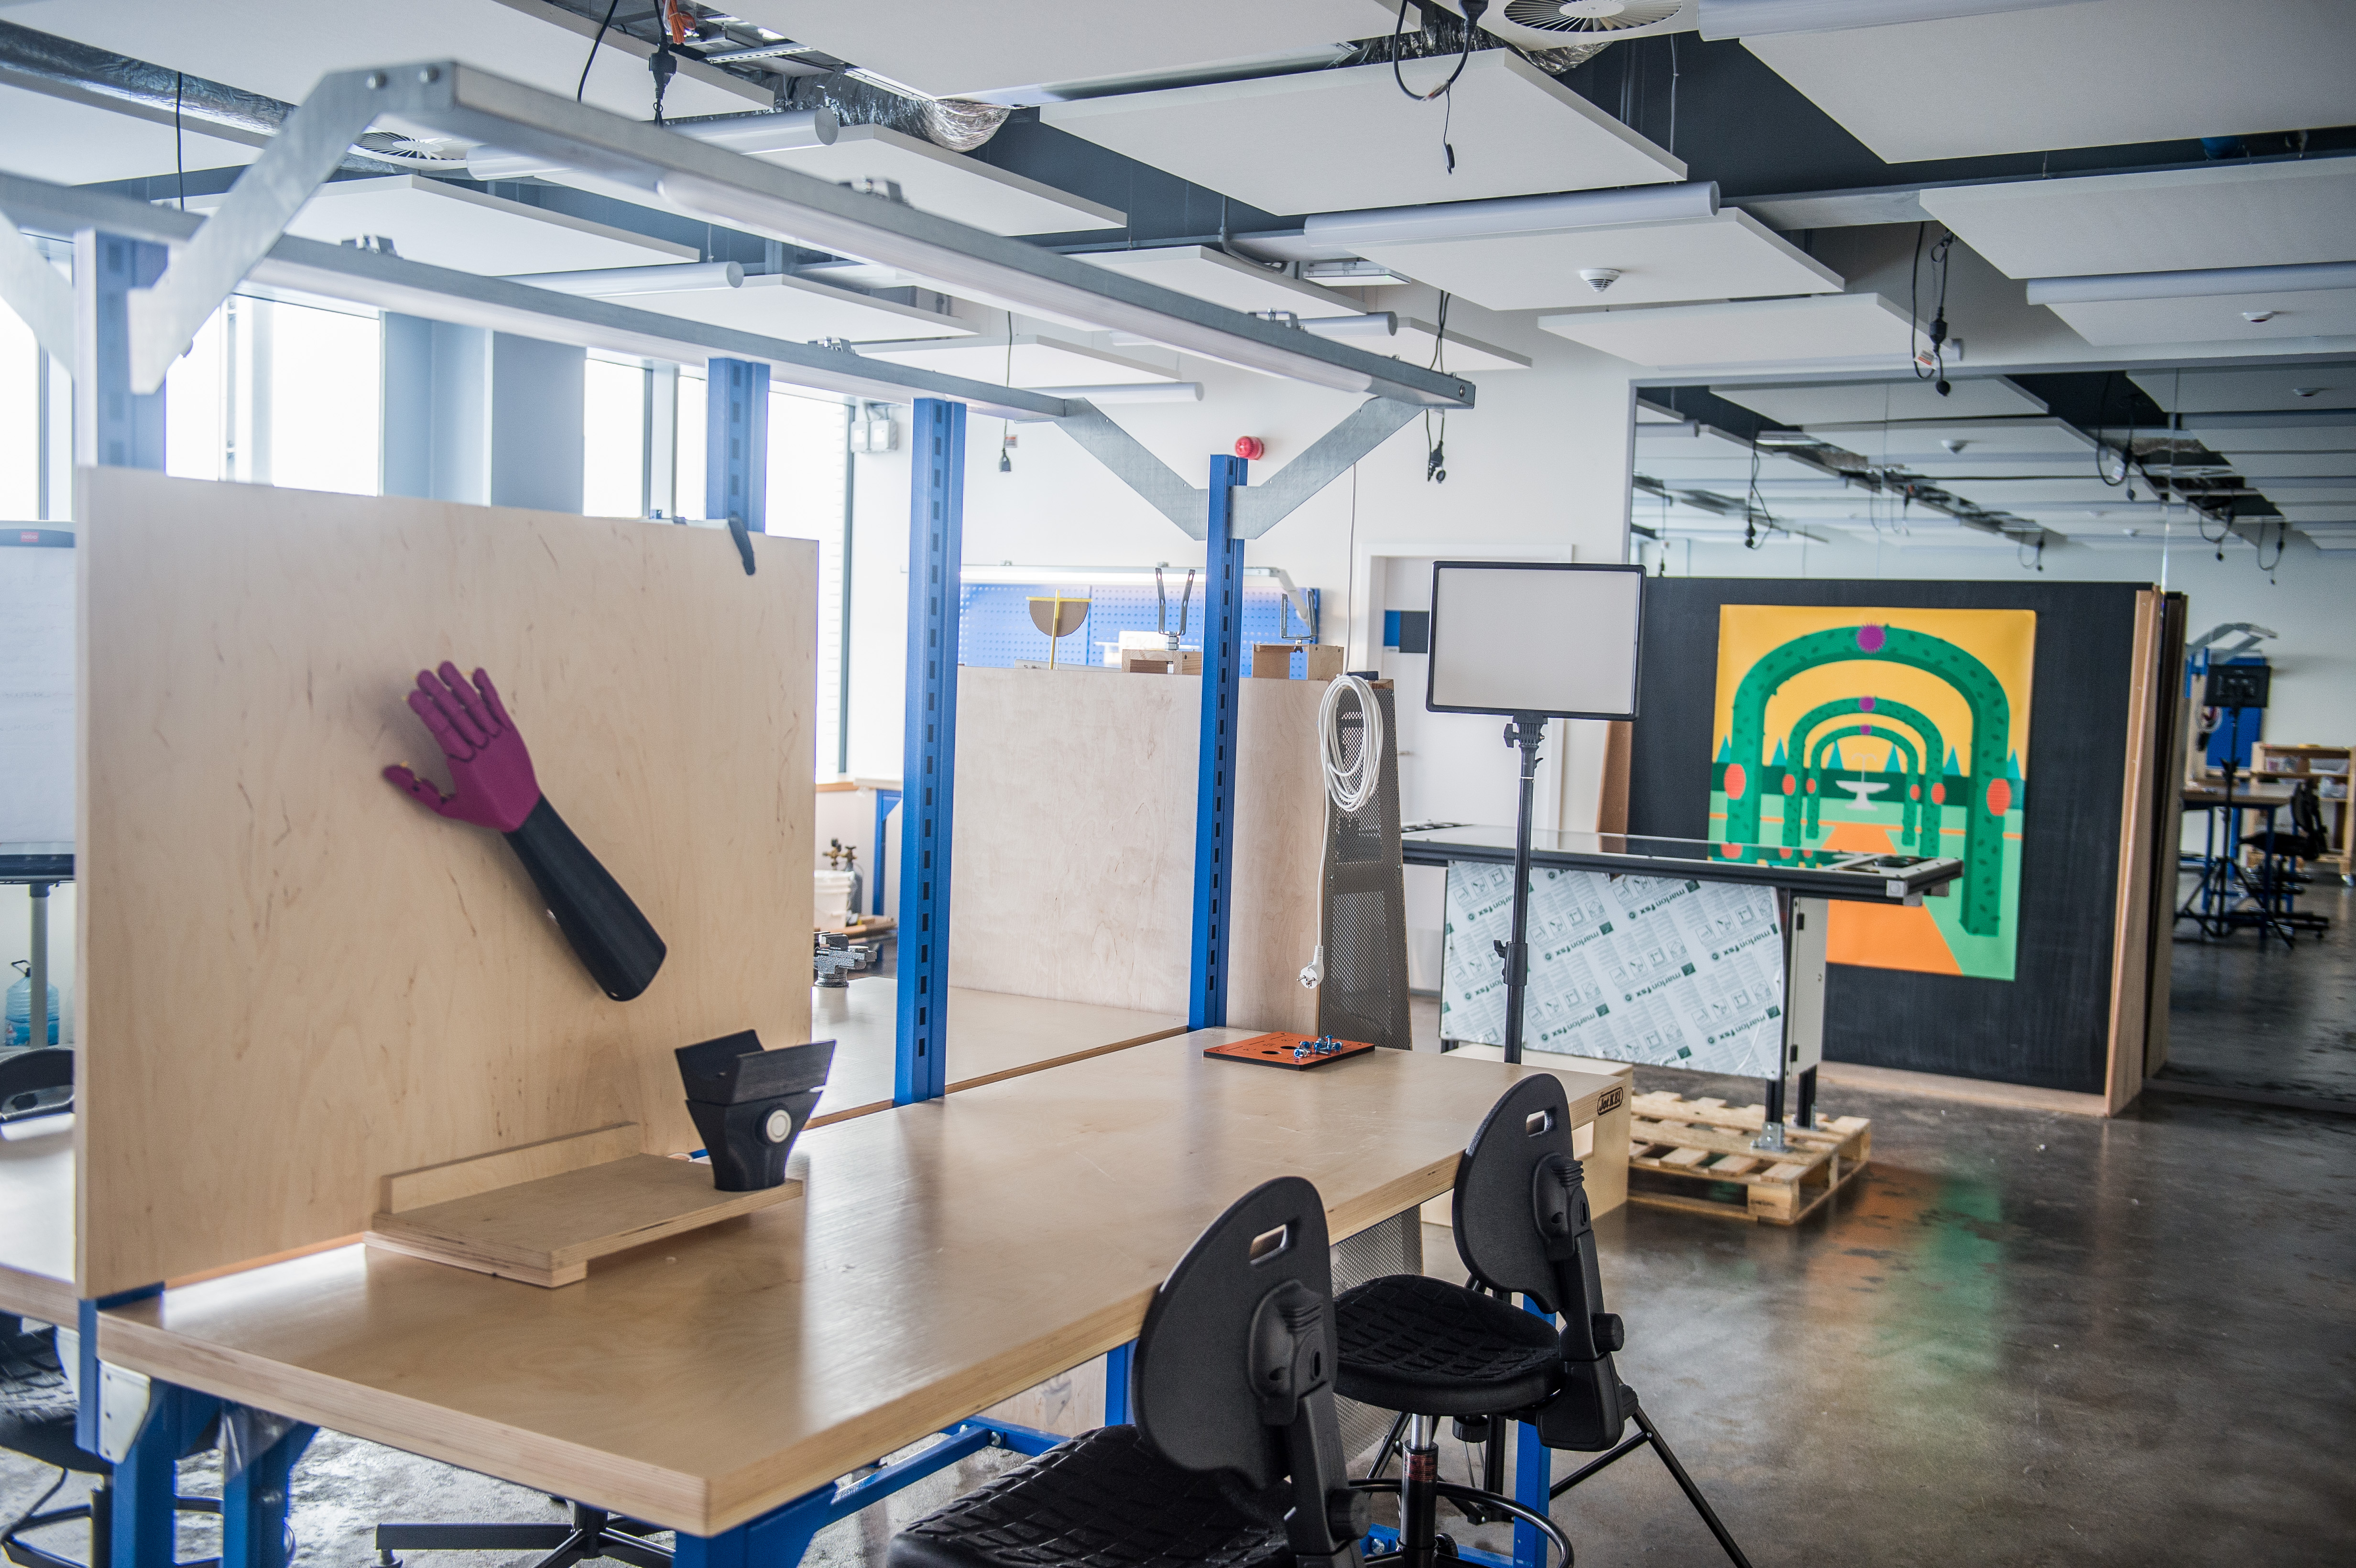 Prototypownia w Pracowni Przewrotu Kopernikańskiego - duże jasne pomieszczenie ze stołami warsztatowymi, półkami z narzędziami i stanowiskami do pracy.